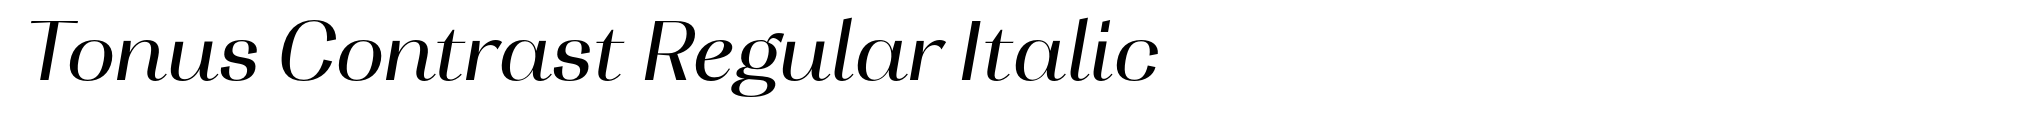 Tonus Contrast Regular Italic image